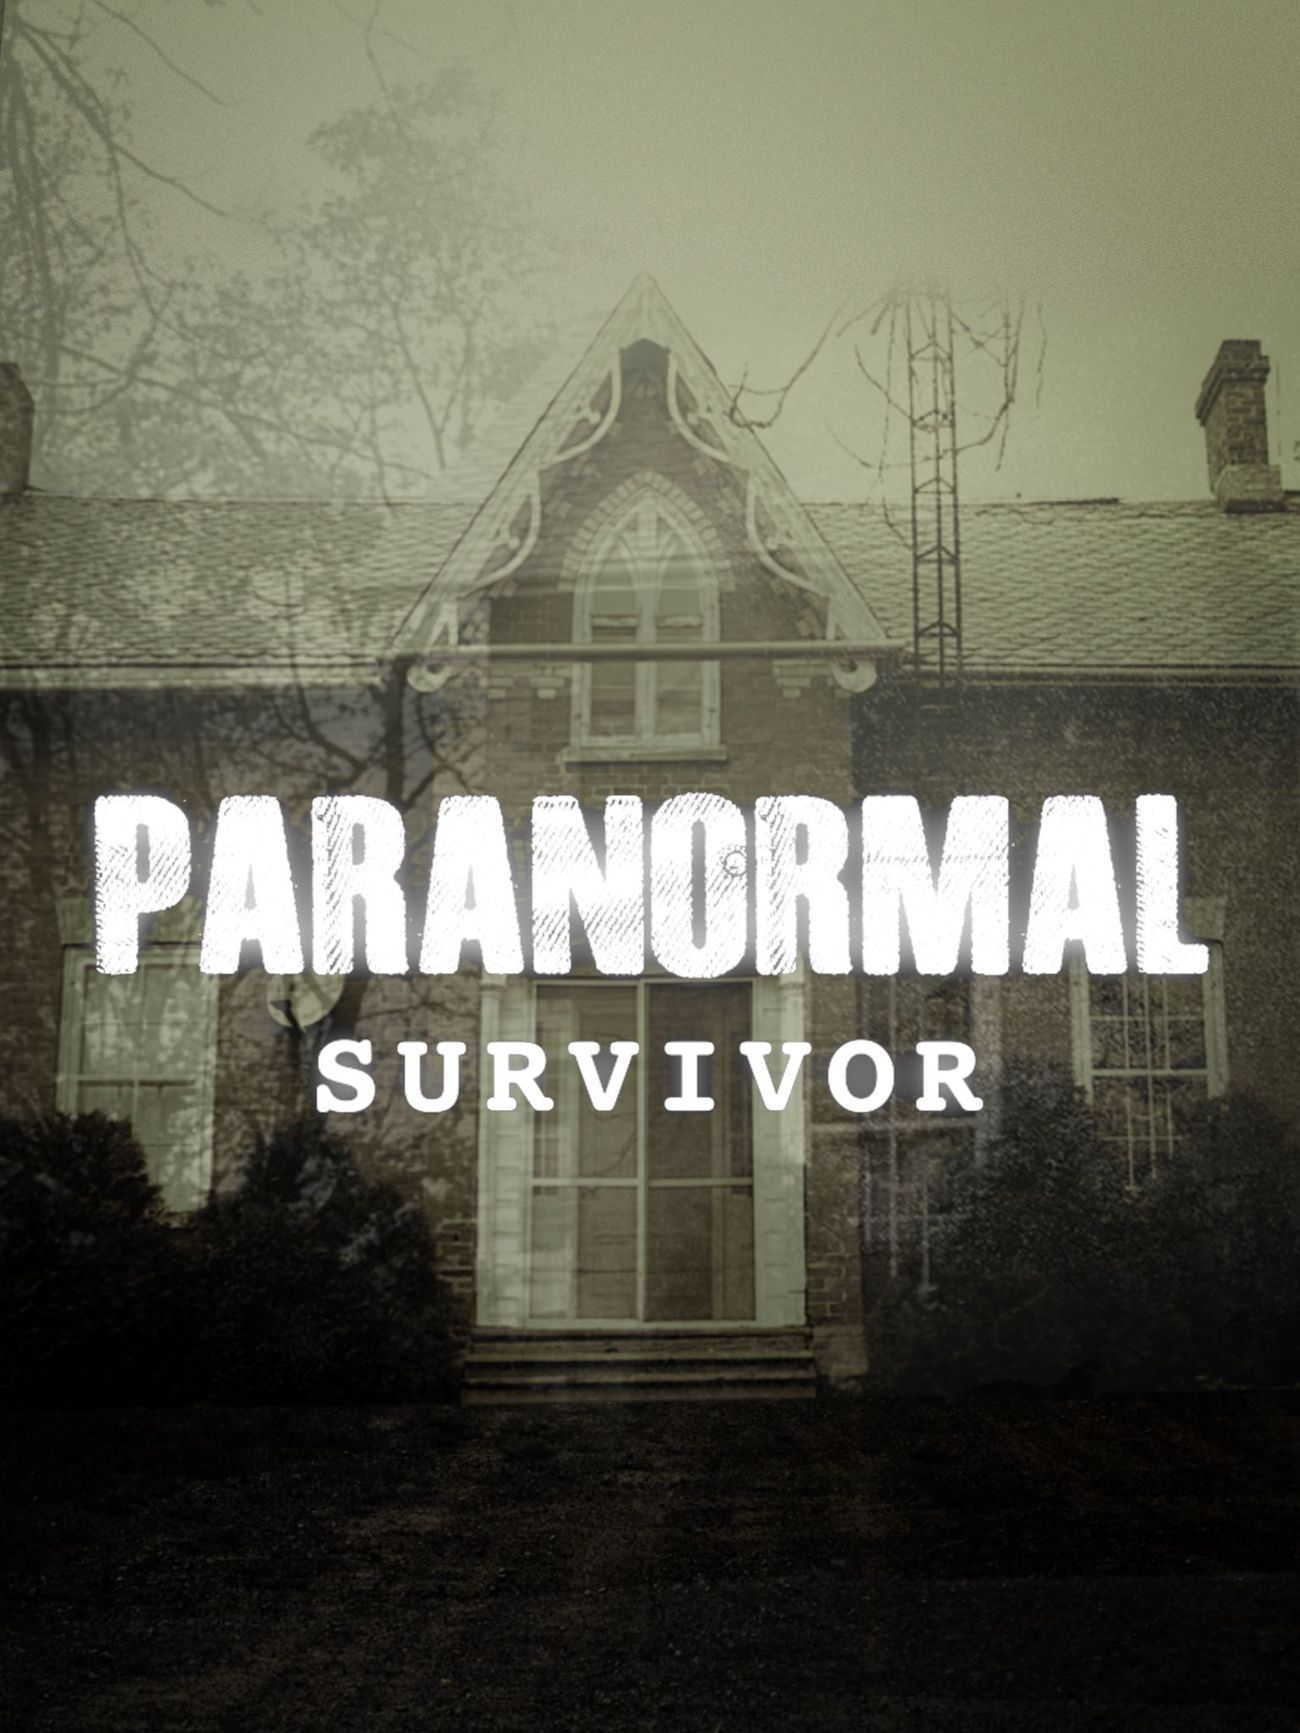 Paranormal Survivor - Season 3